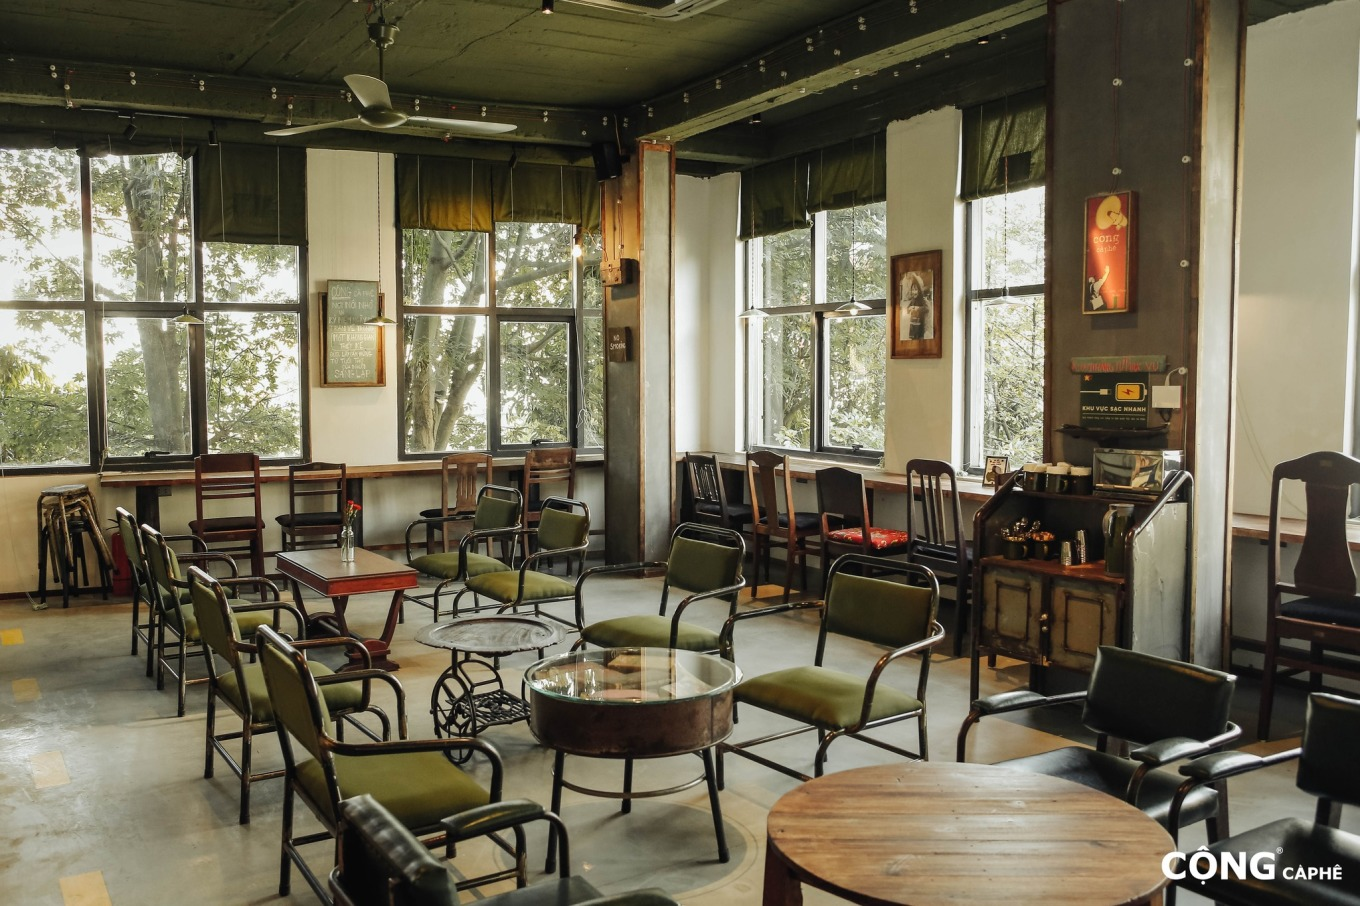 Кофейня Cong оформлена преимущественно в зеленом стиле и украшена неоднородными стульями. Фото: Cong Caphe